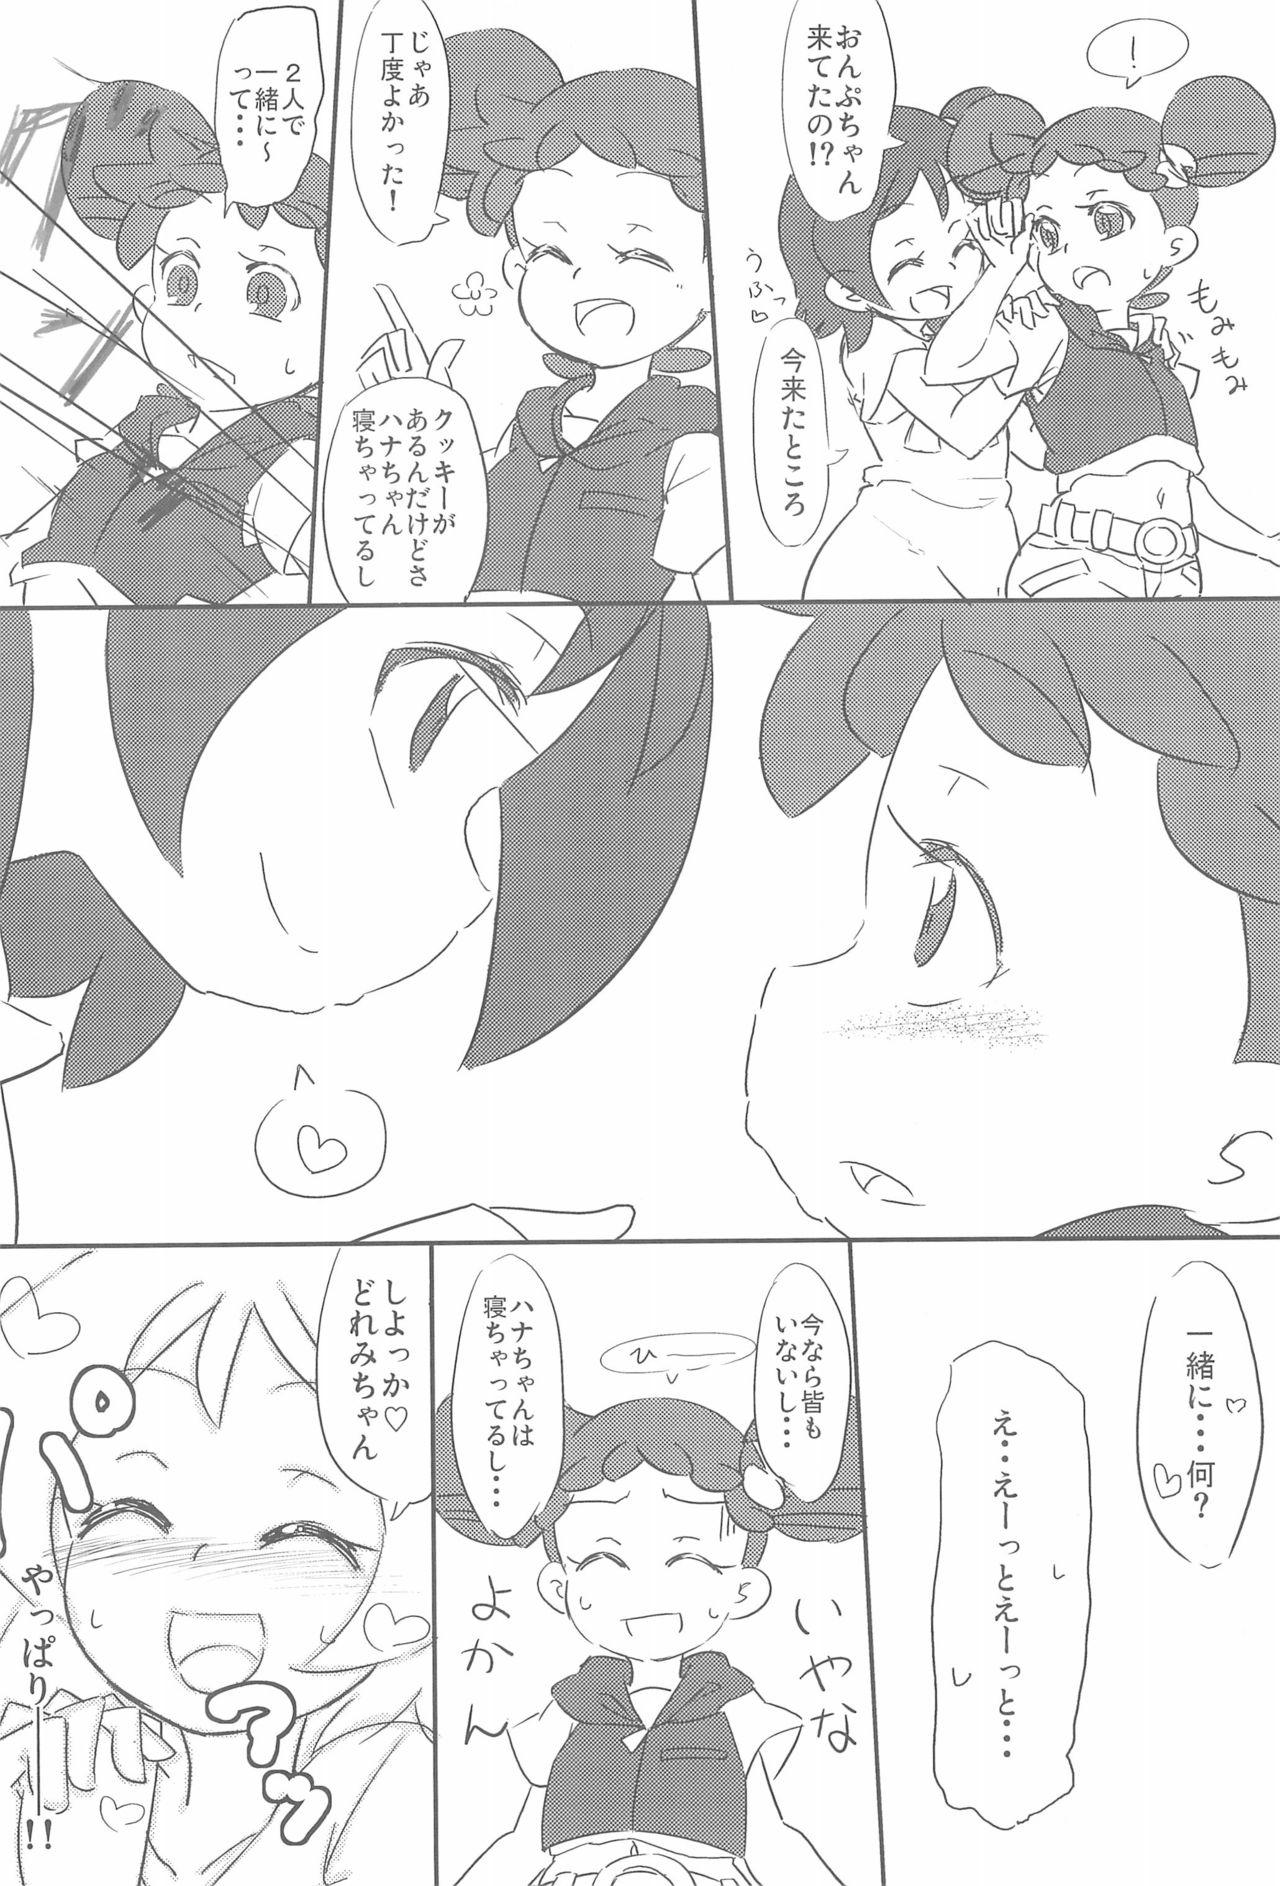 Flaca Yome××Yome - Ojamajo doremi Affair - Page 4